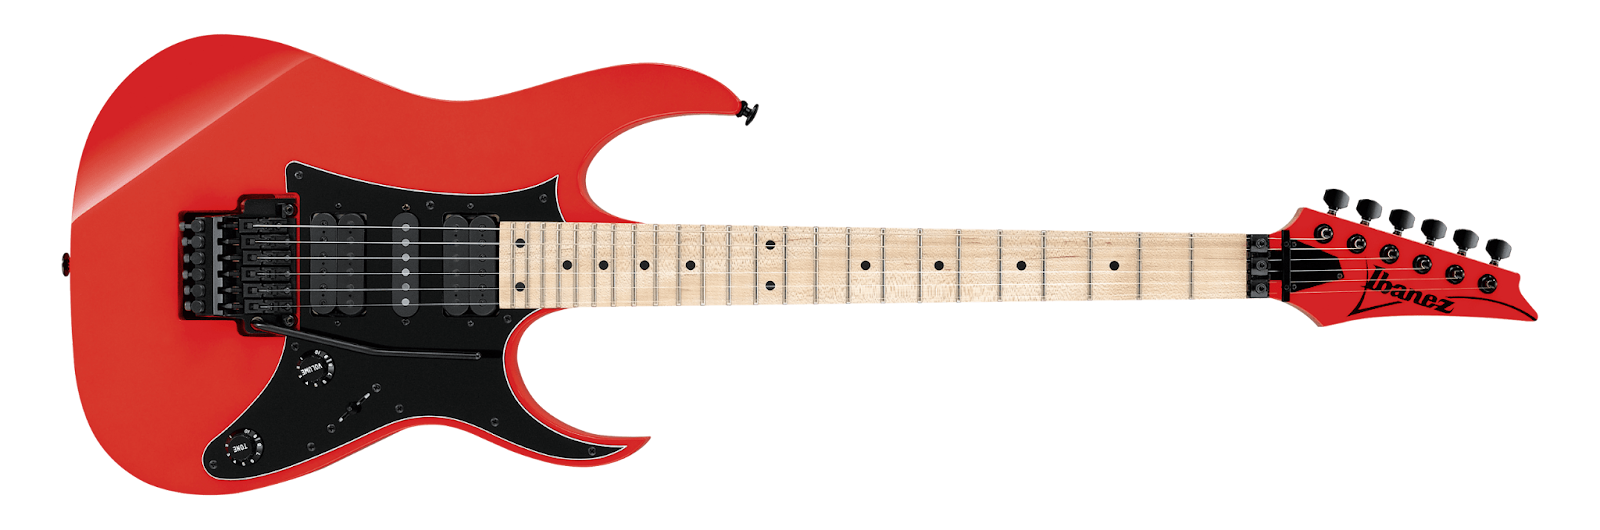 Ibanez Genesis RG550 Electric Guitar